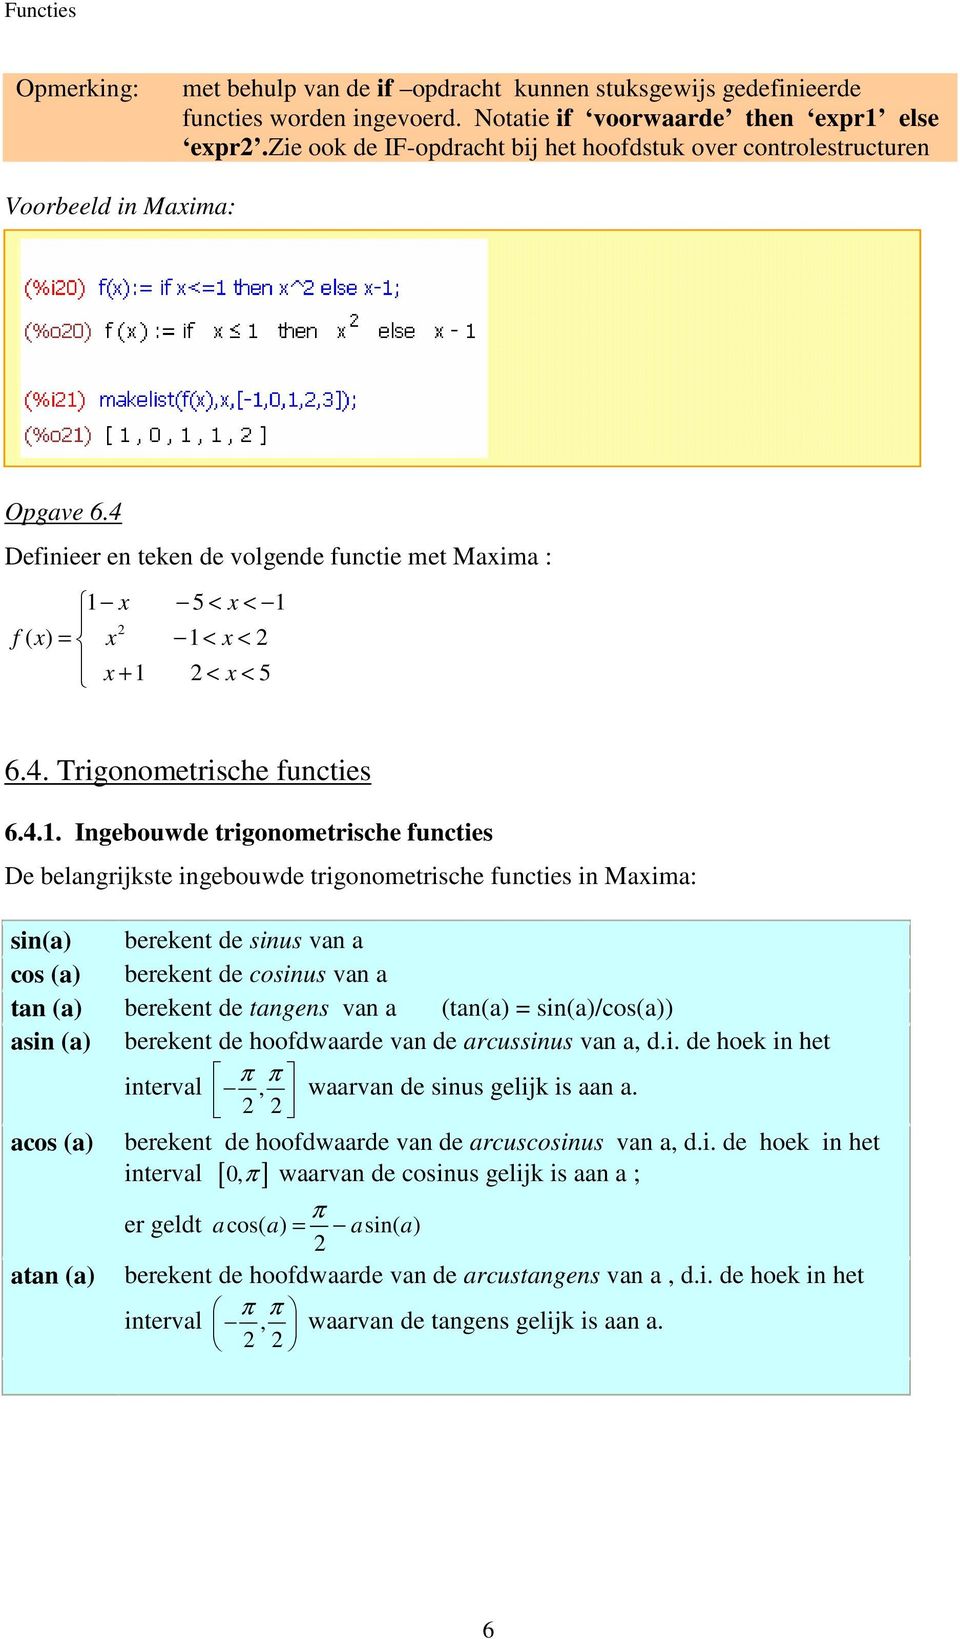 4.1. Ingebouwde trigonometrische functies De belangrijkste ingebouwde trigonometrische functies in Maxima: sin(a) berekent de sinus van a cos (a) berekent de cosinus van a tan (a) berekent de tangens